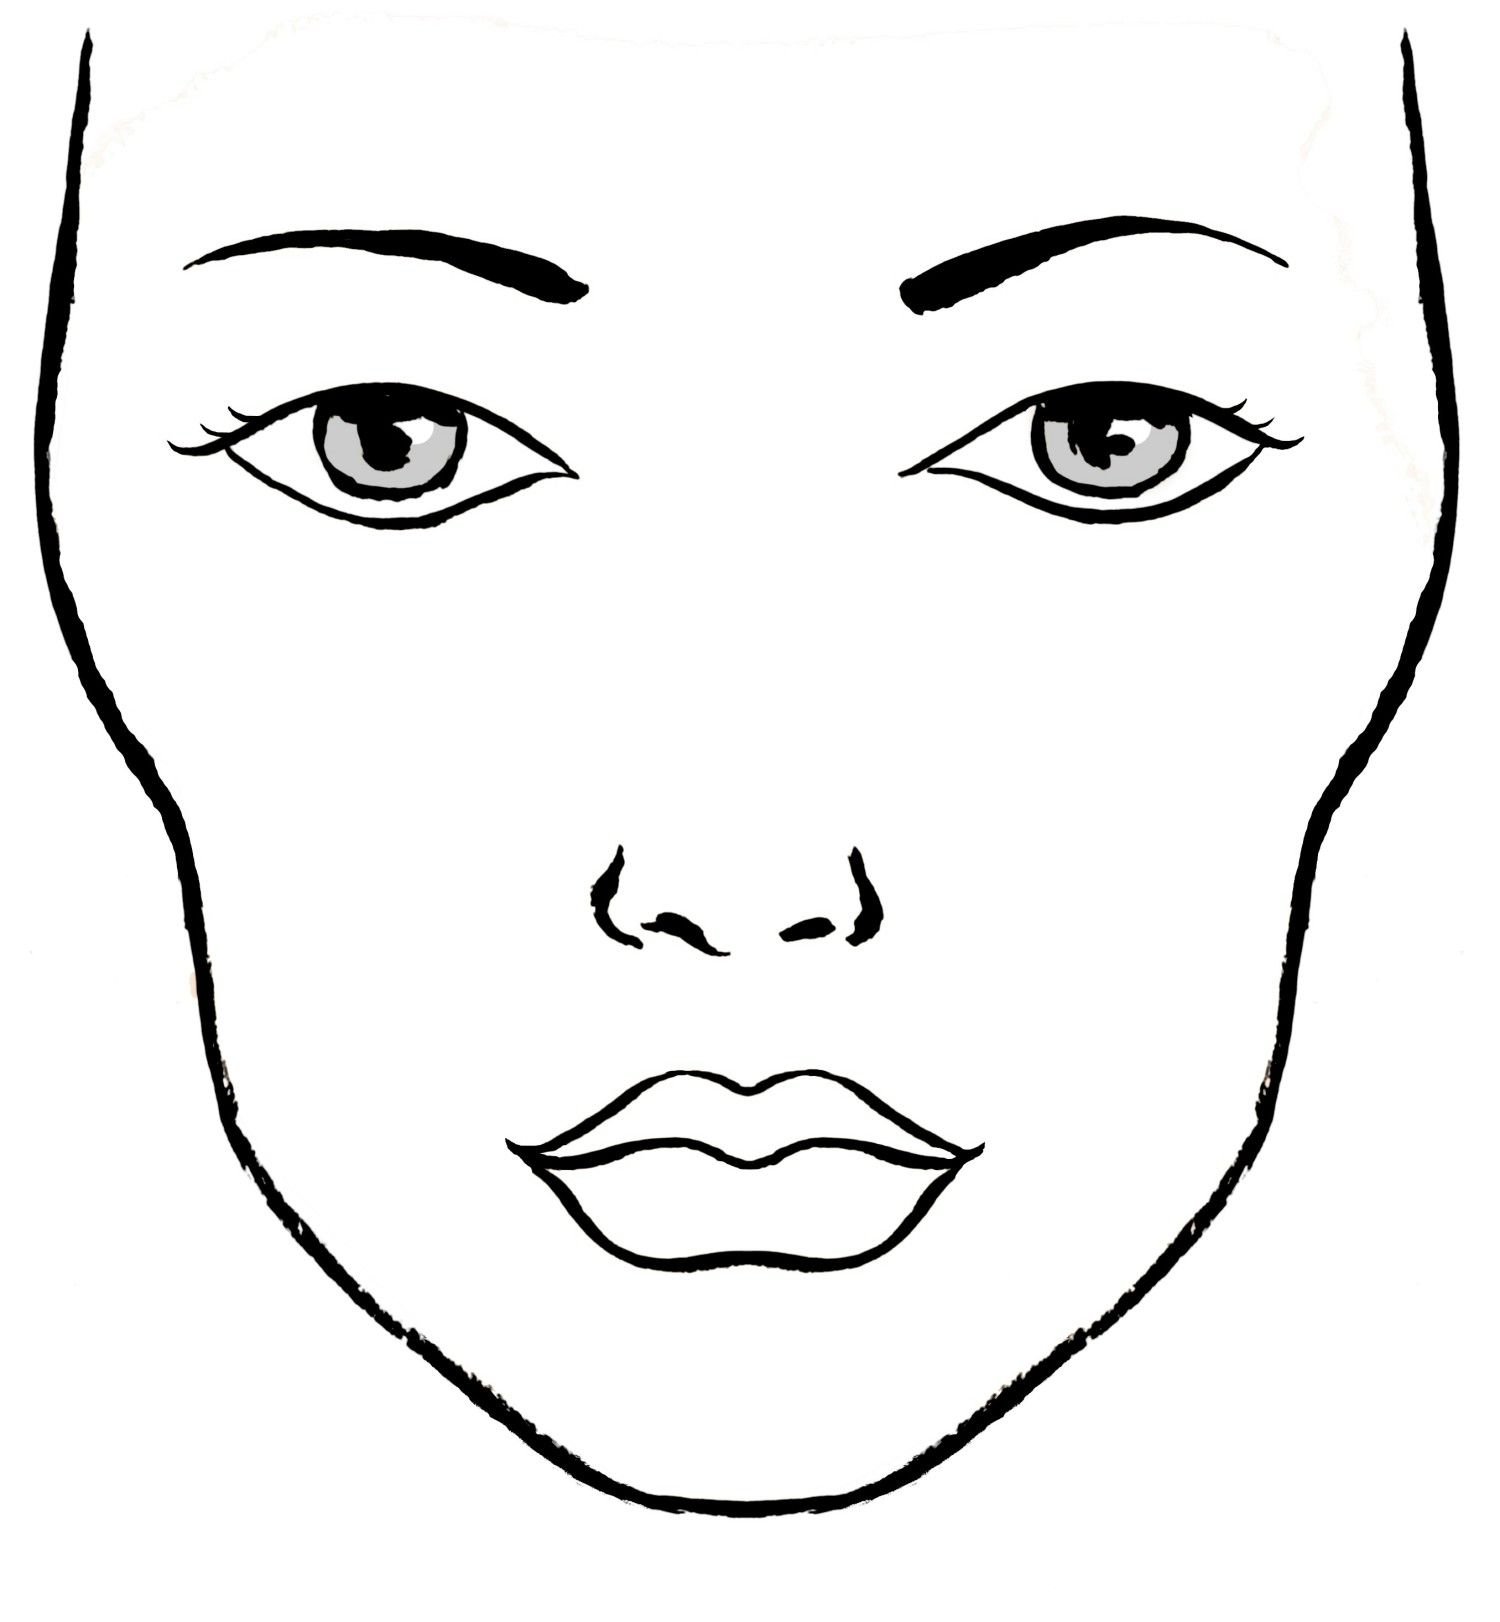 Образец лица. Макет лица. Фейс чарт. Схематичное изображение лица. Очертания лица.